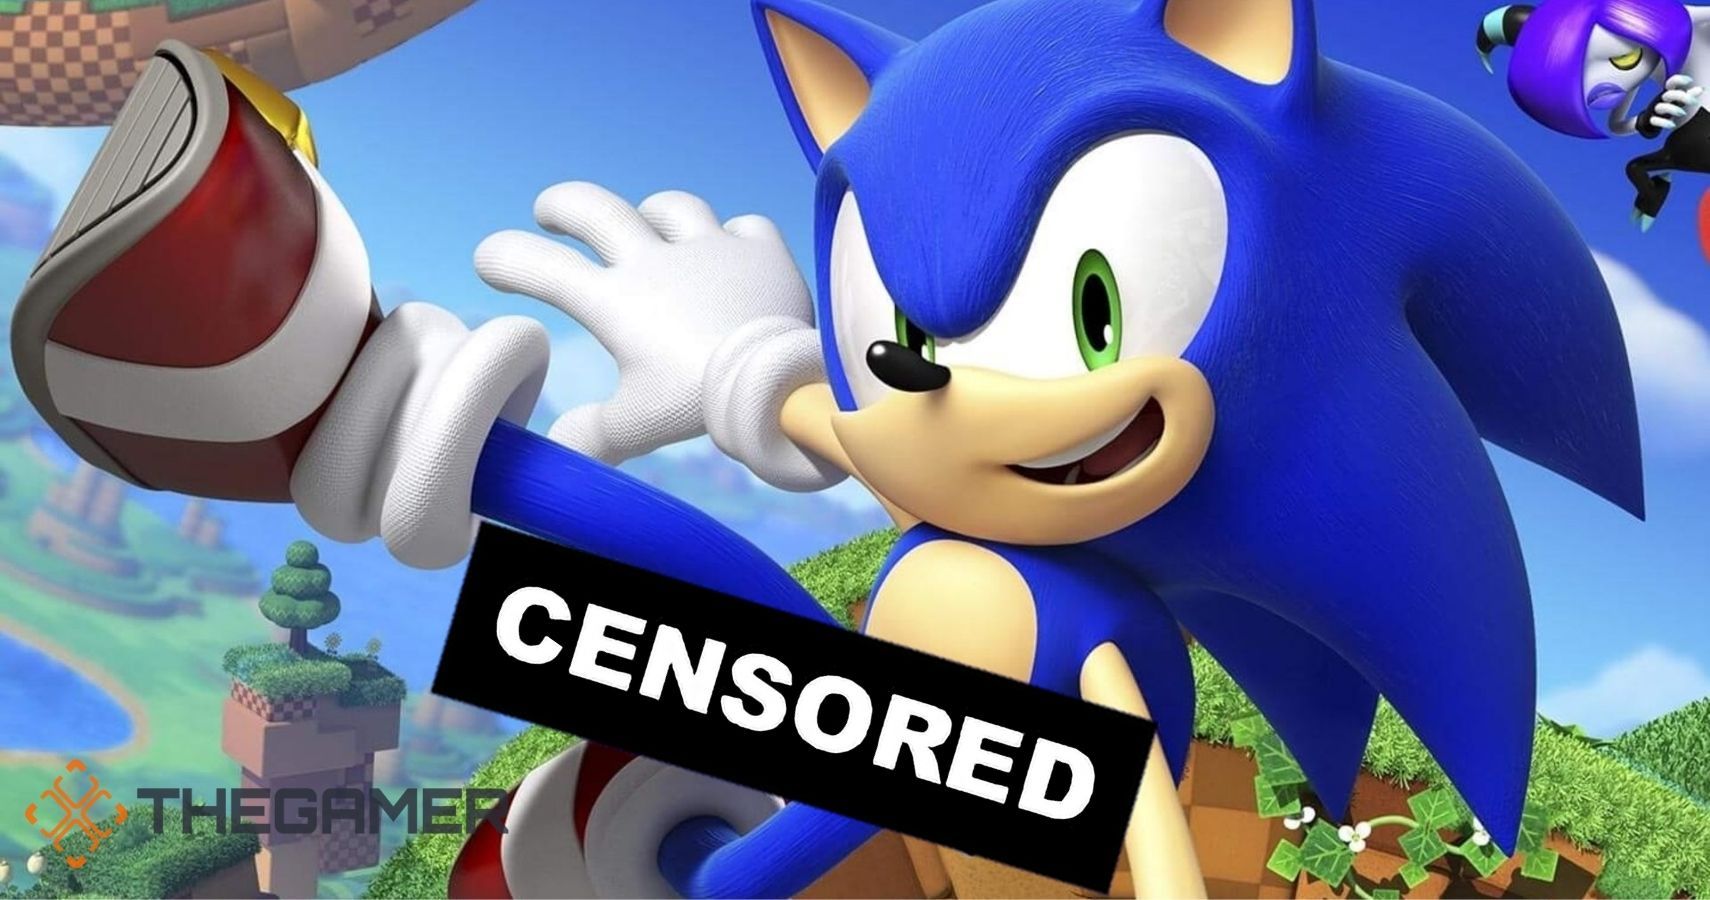 sonic-censored